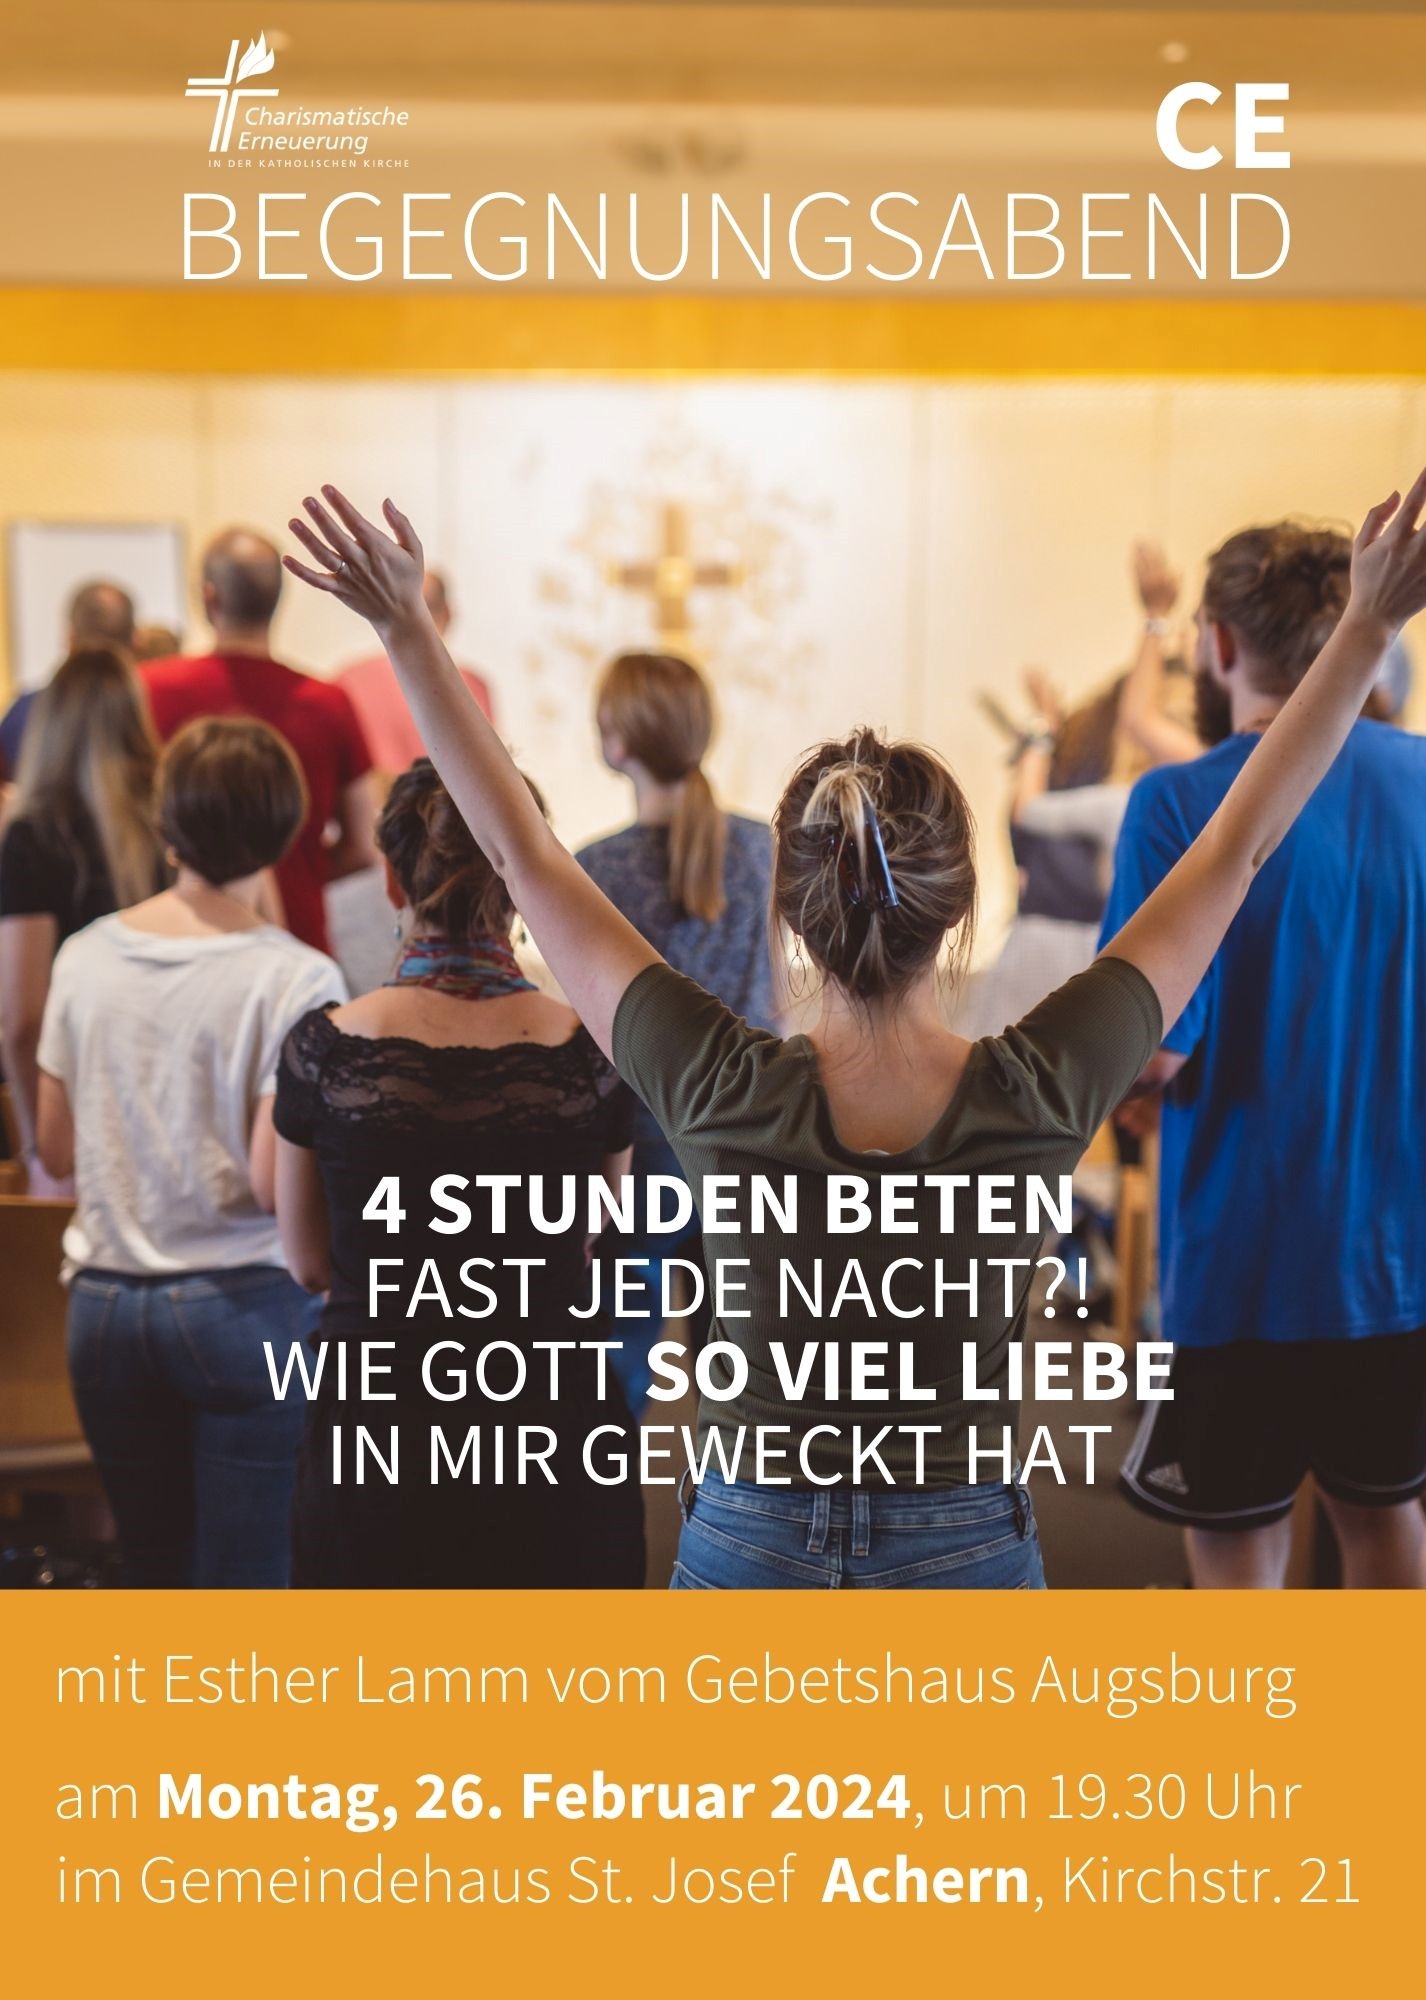 Begegnungsabend der CE Mittelbaden mit Esther Lamm vom Gebetshaus Augsburg